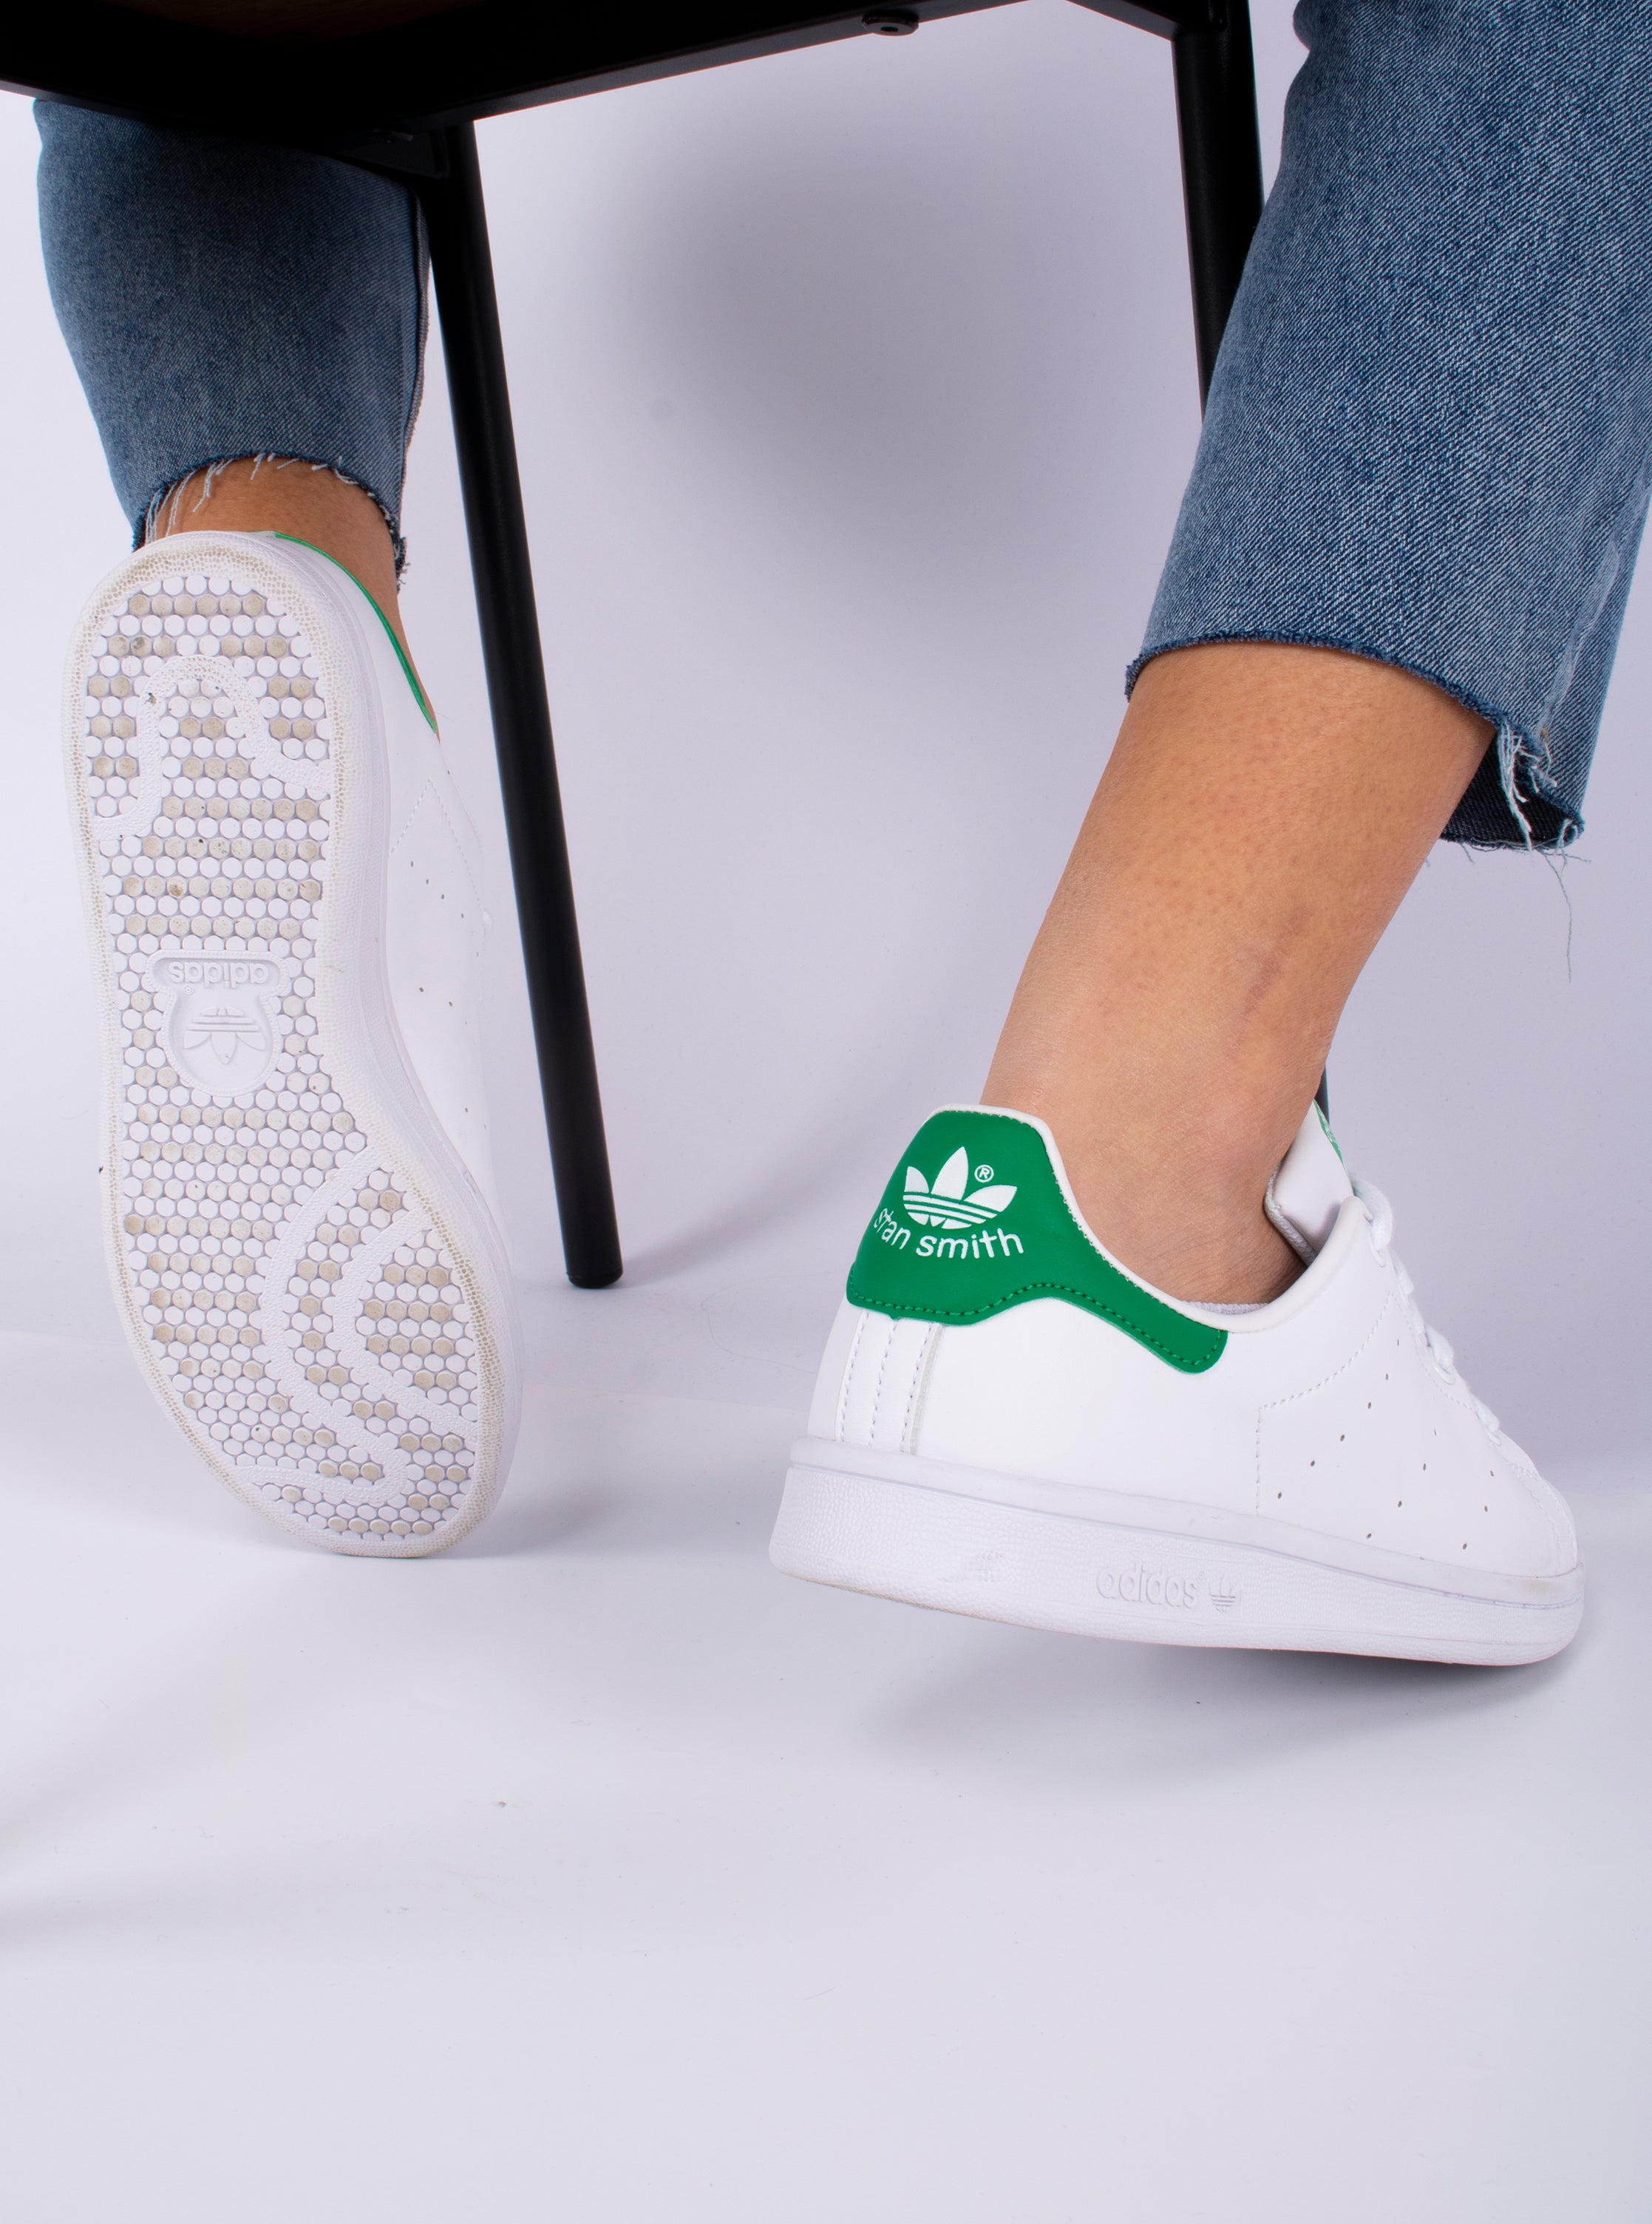 Adidas stansmith White/Green